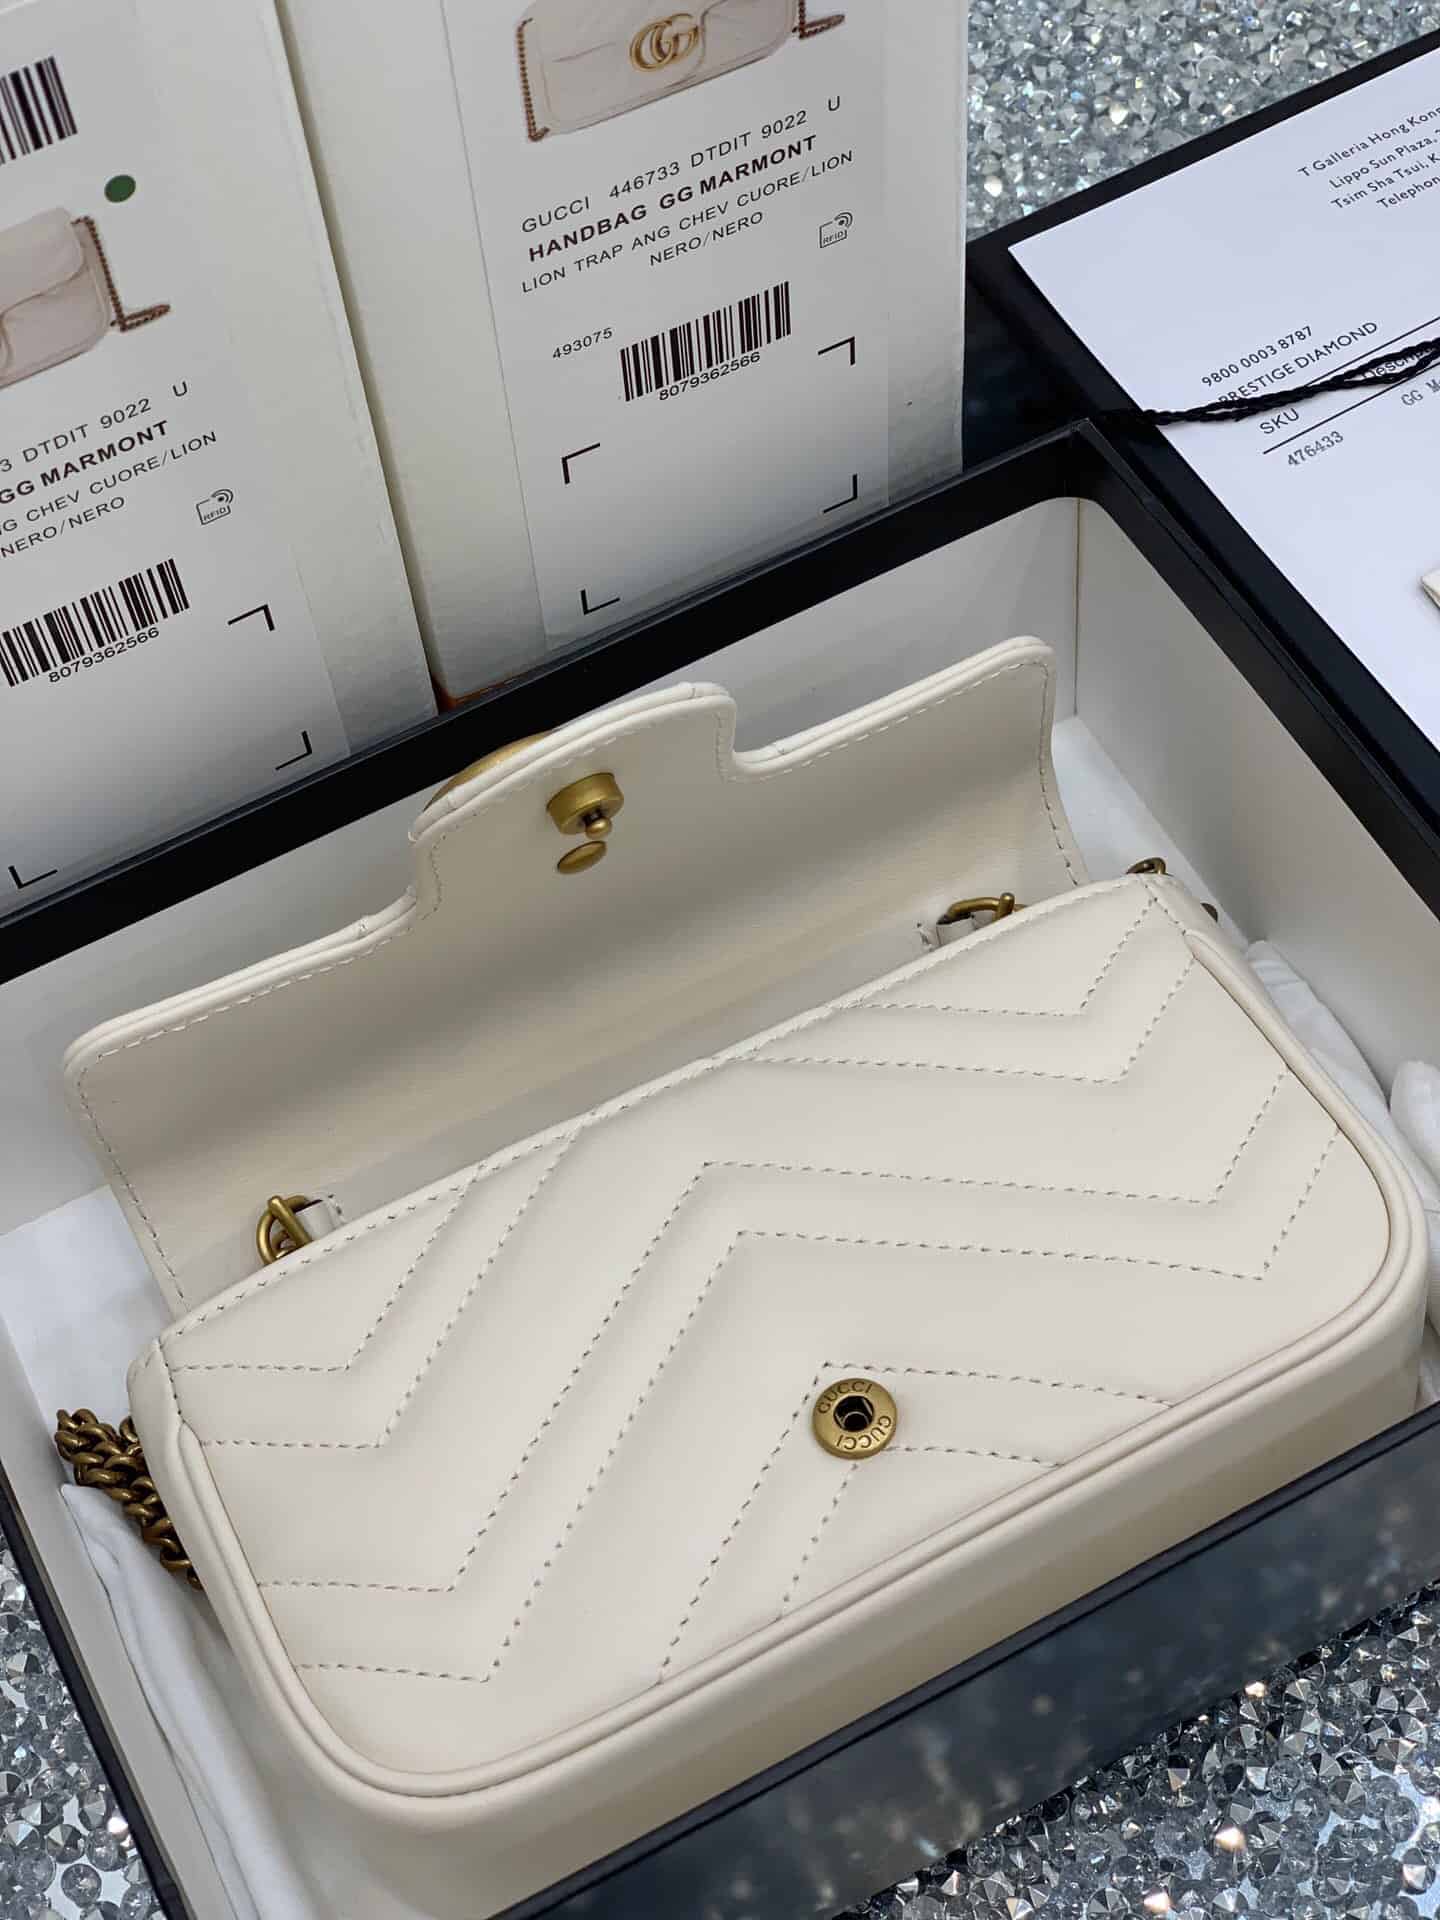 Gucci GG Marmont系列绗缝皮革超迷你手袋 476433